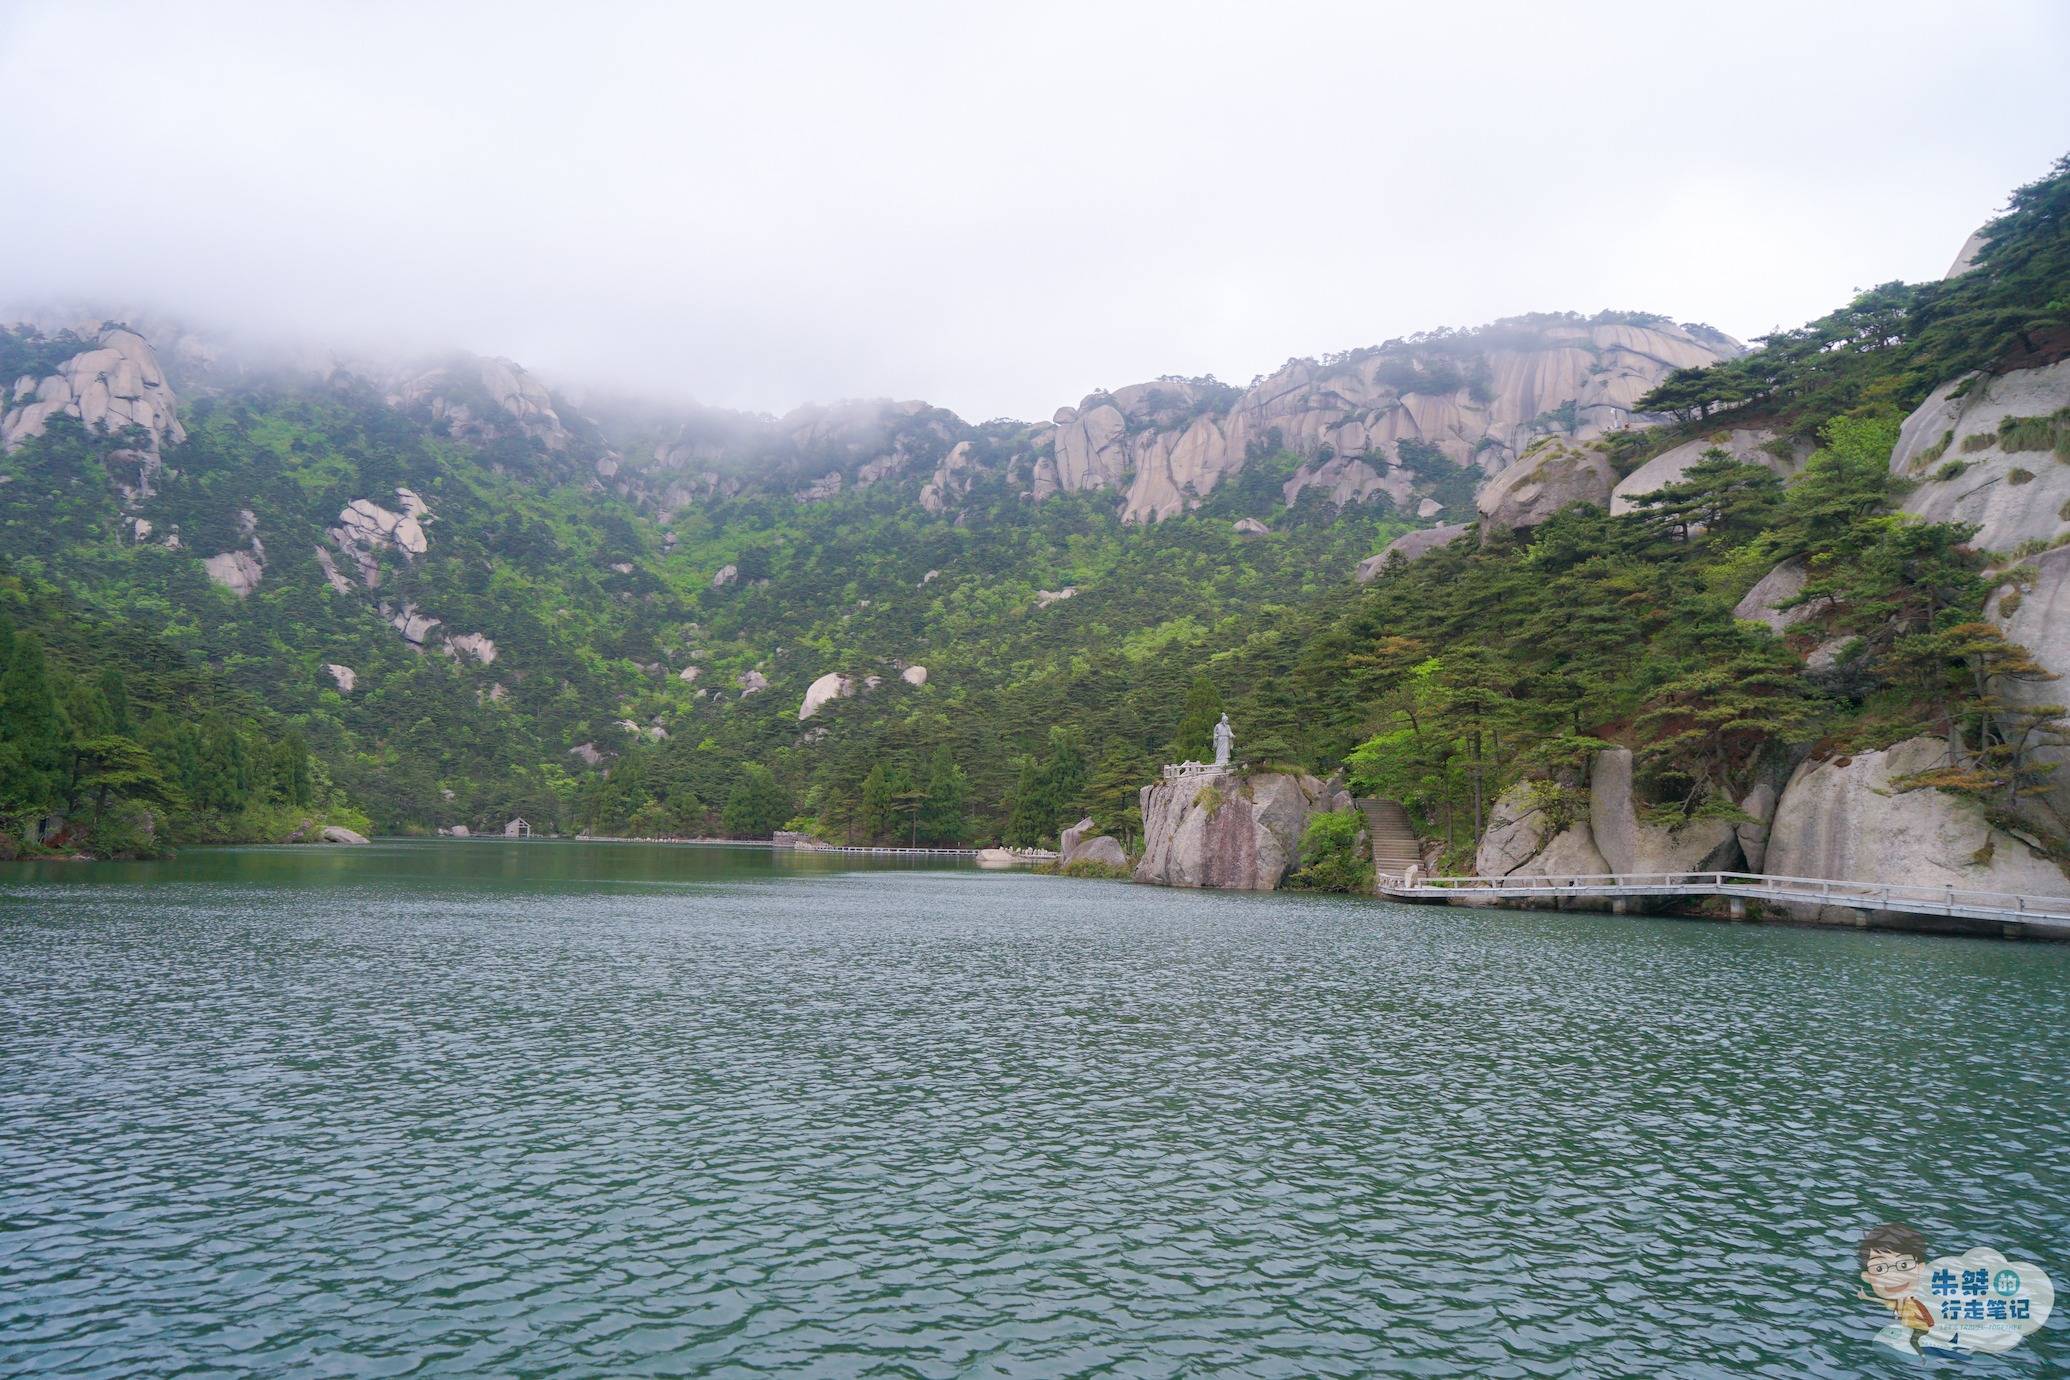 亲测推荐安徽最美水景观赏地，有的景致不逊西湖，有的风光不输九寨